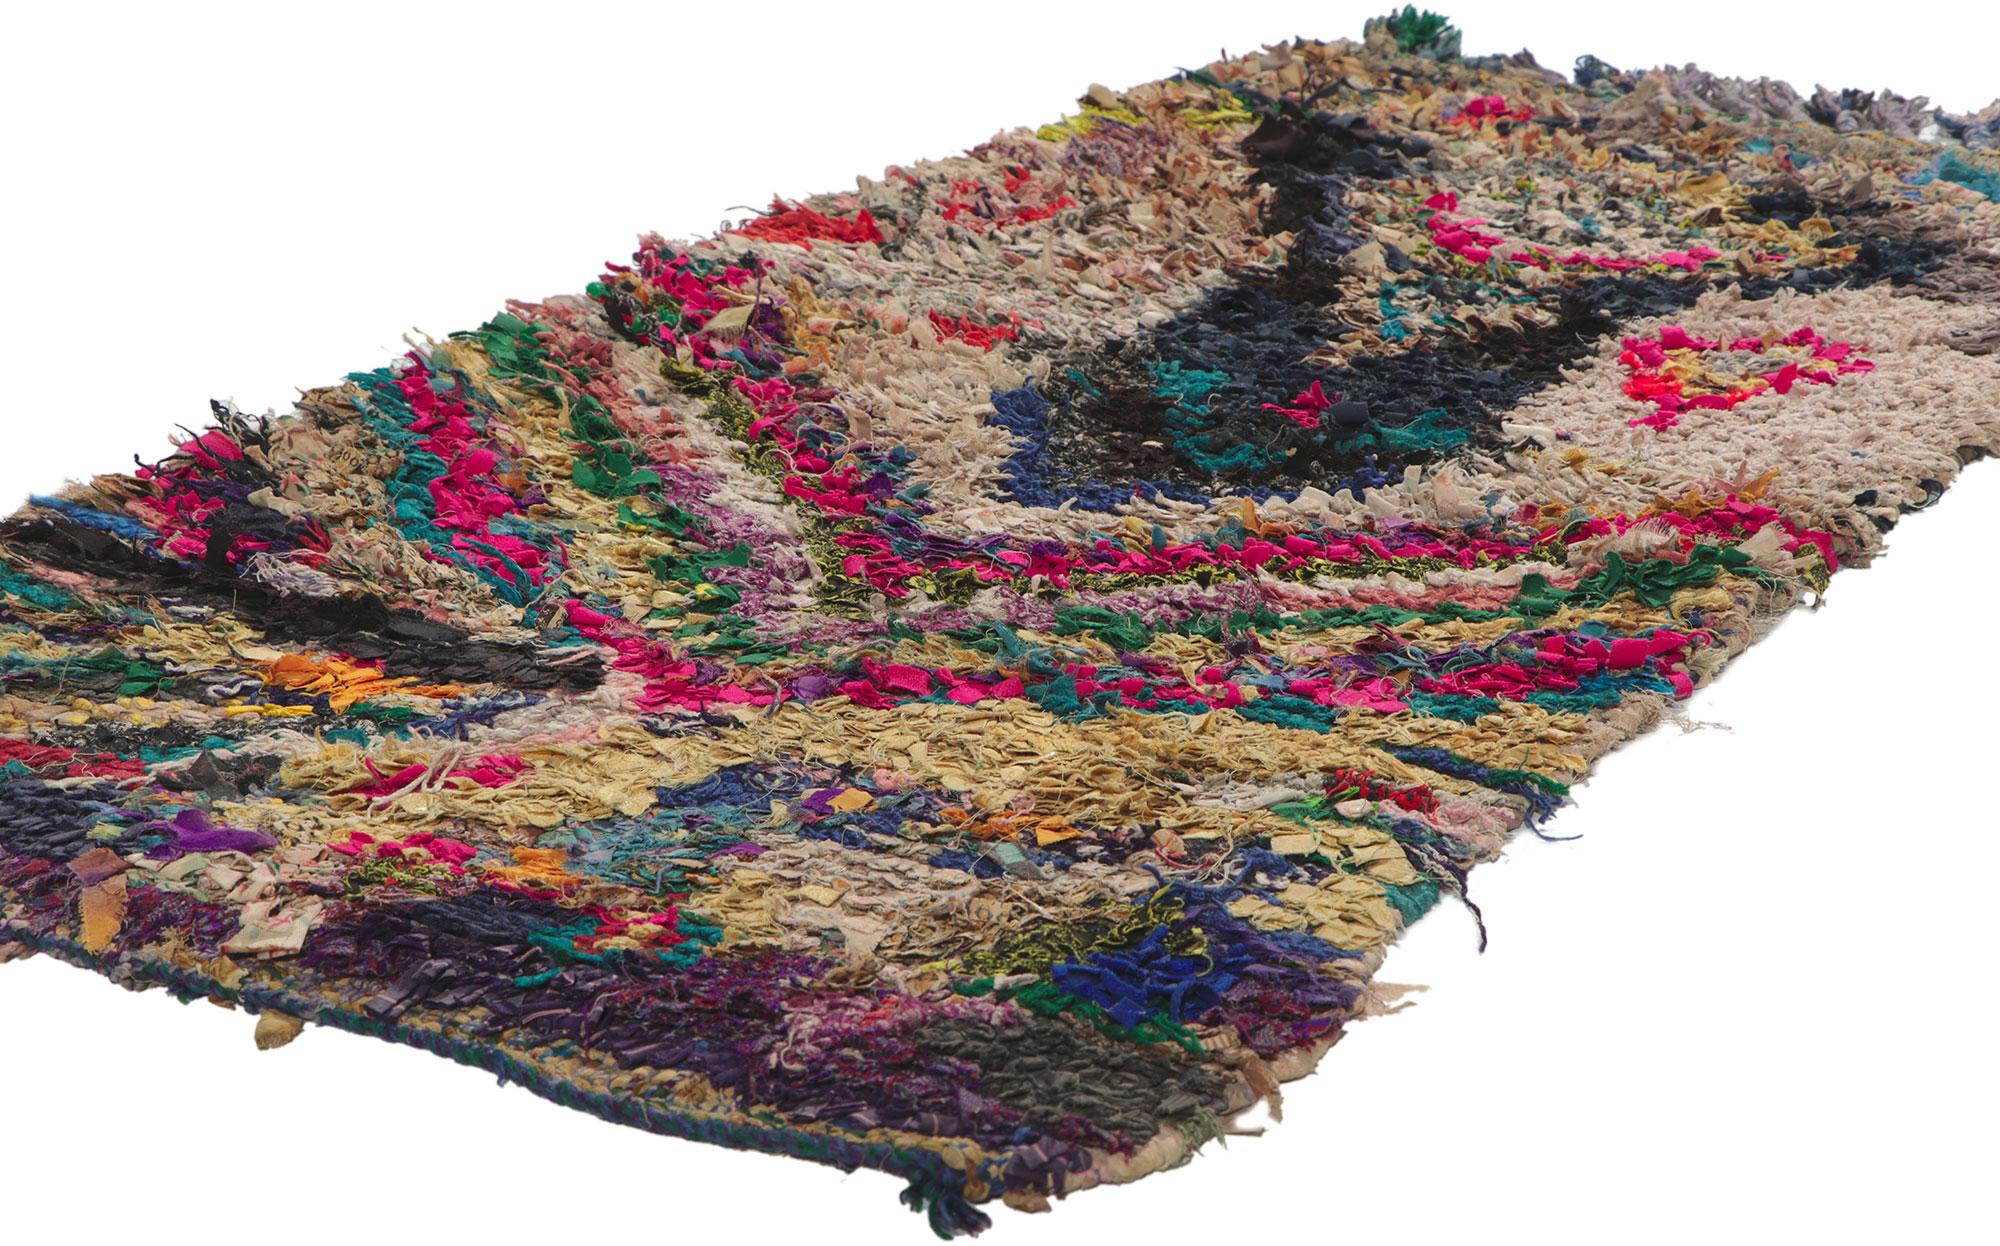 78408 Vintage Moroccan Rag rug, Berber Boucherouite 02'02 x 04'01. Avec son charme nomade, ses détails et sa texture incroyables, ce tapis de chiffon marocain vintage noué à la main est une vision captivante de la beauté tissée. Le design tribal